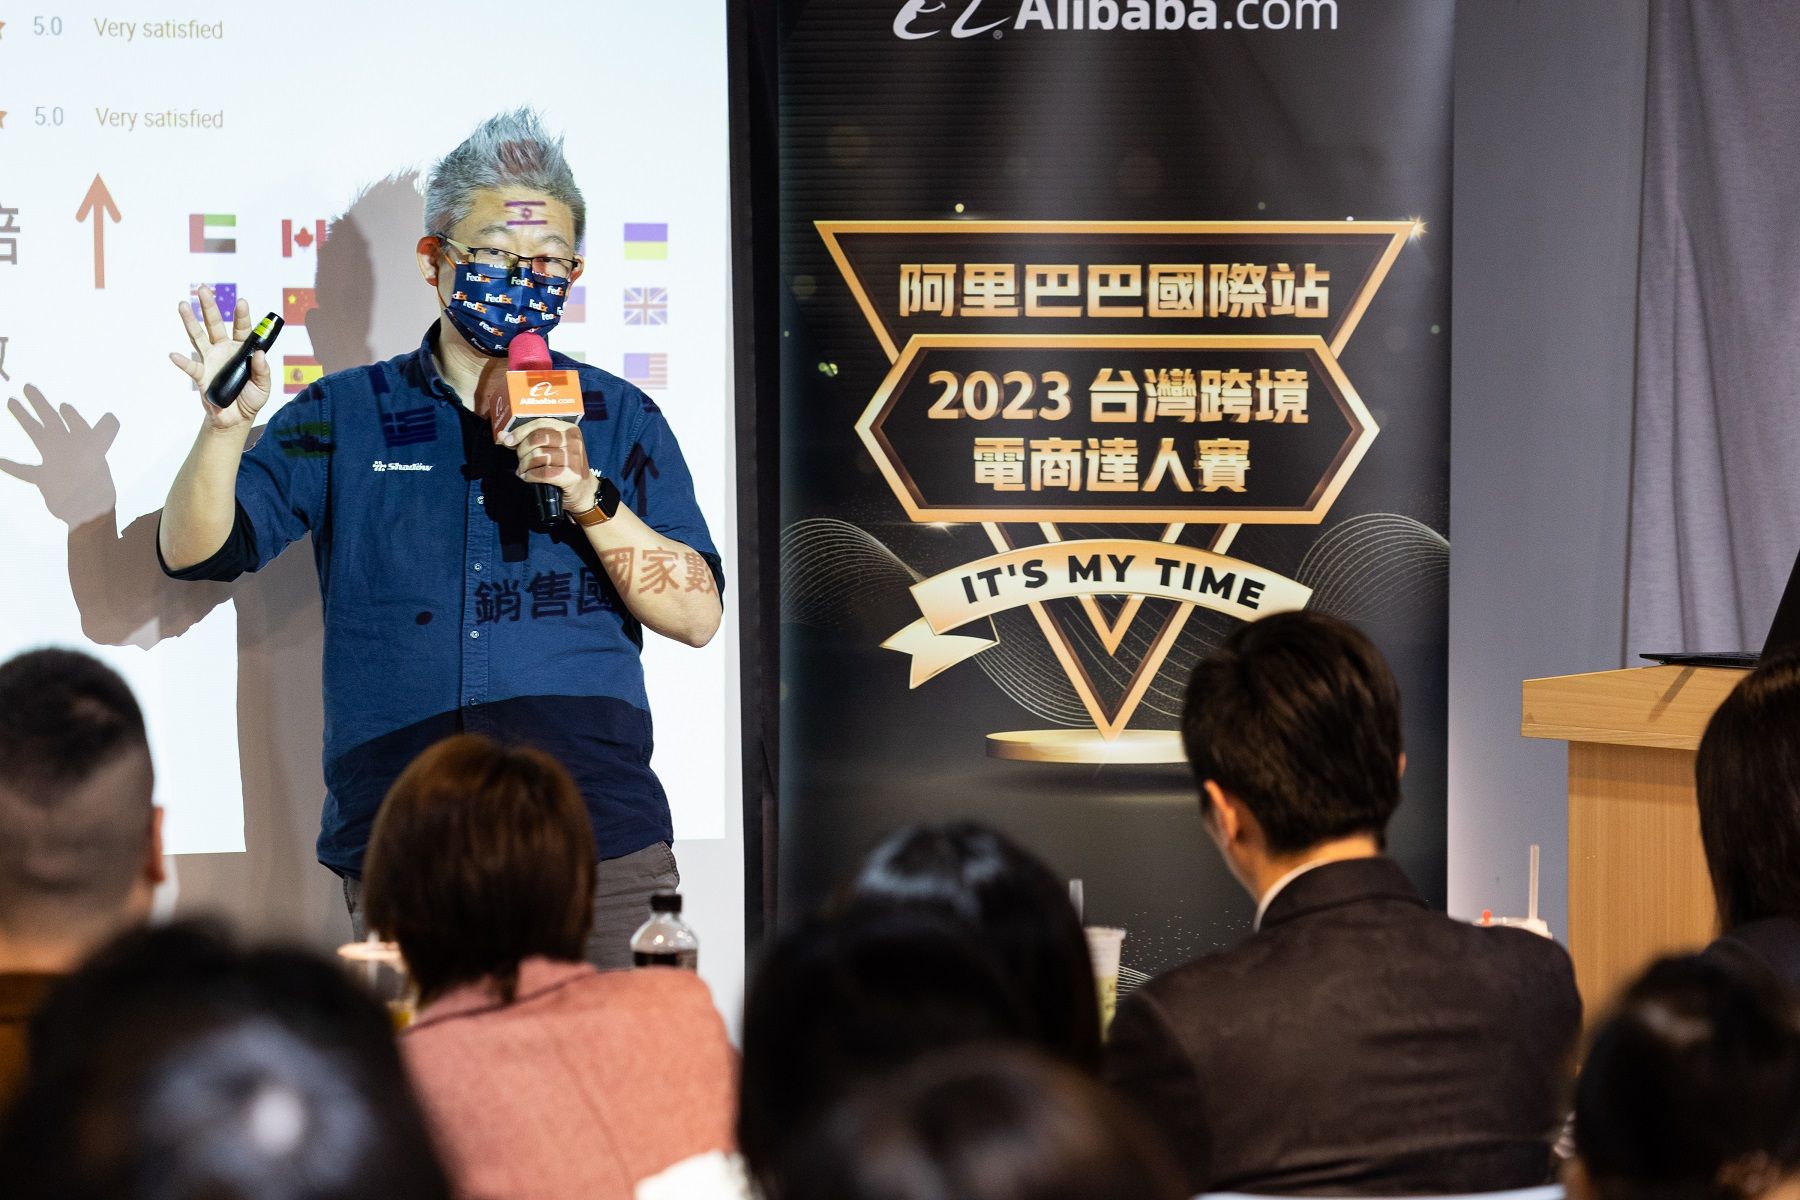 соревнование Alibaba_ (1)